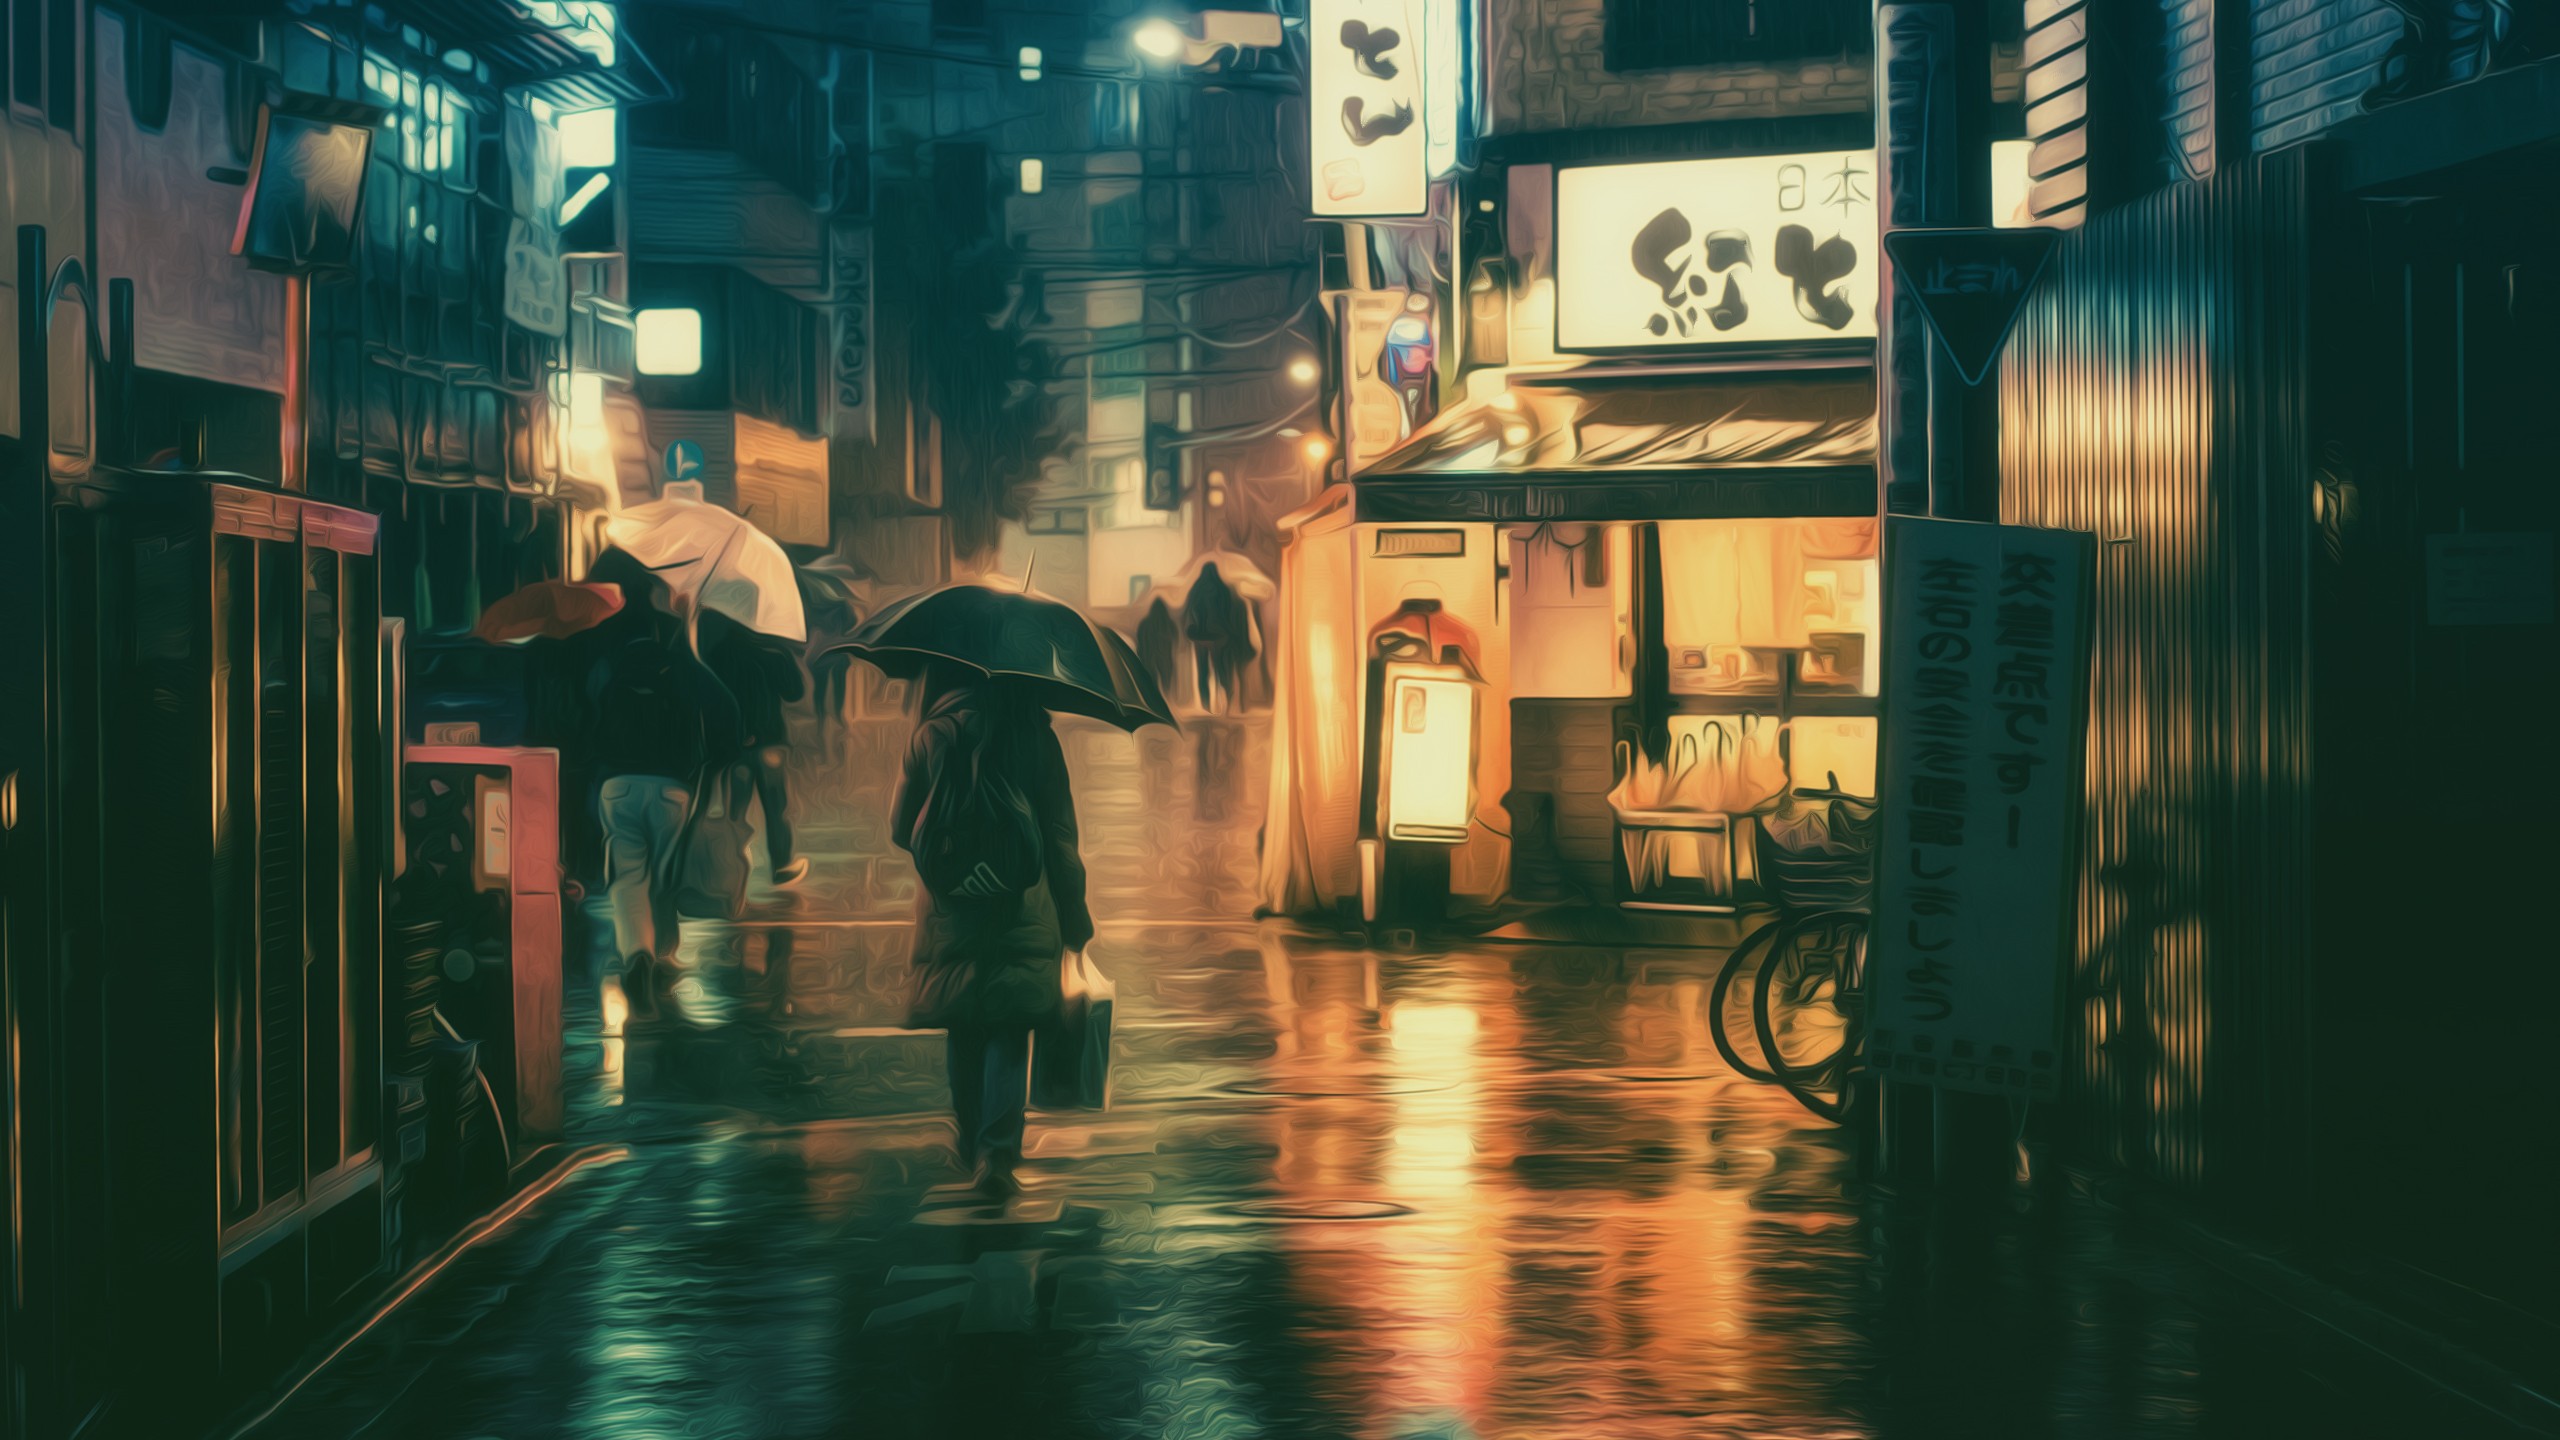 Fond d'ecran Tokyo sous la pluie